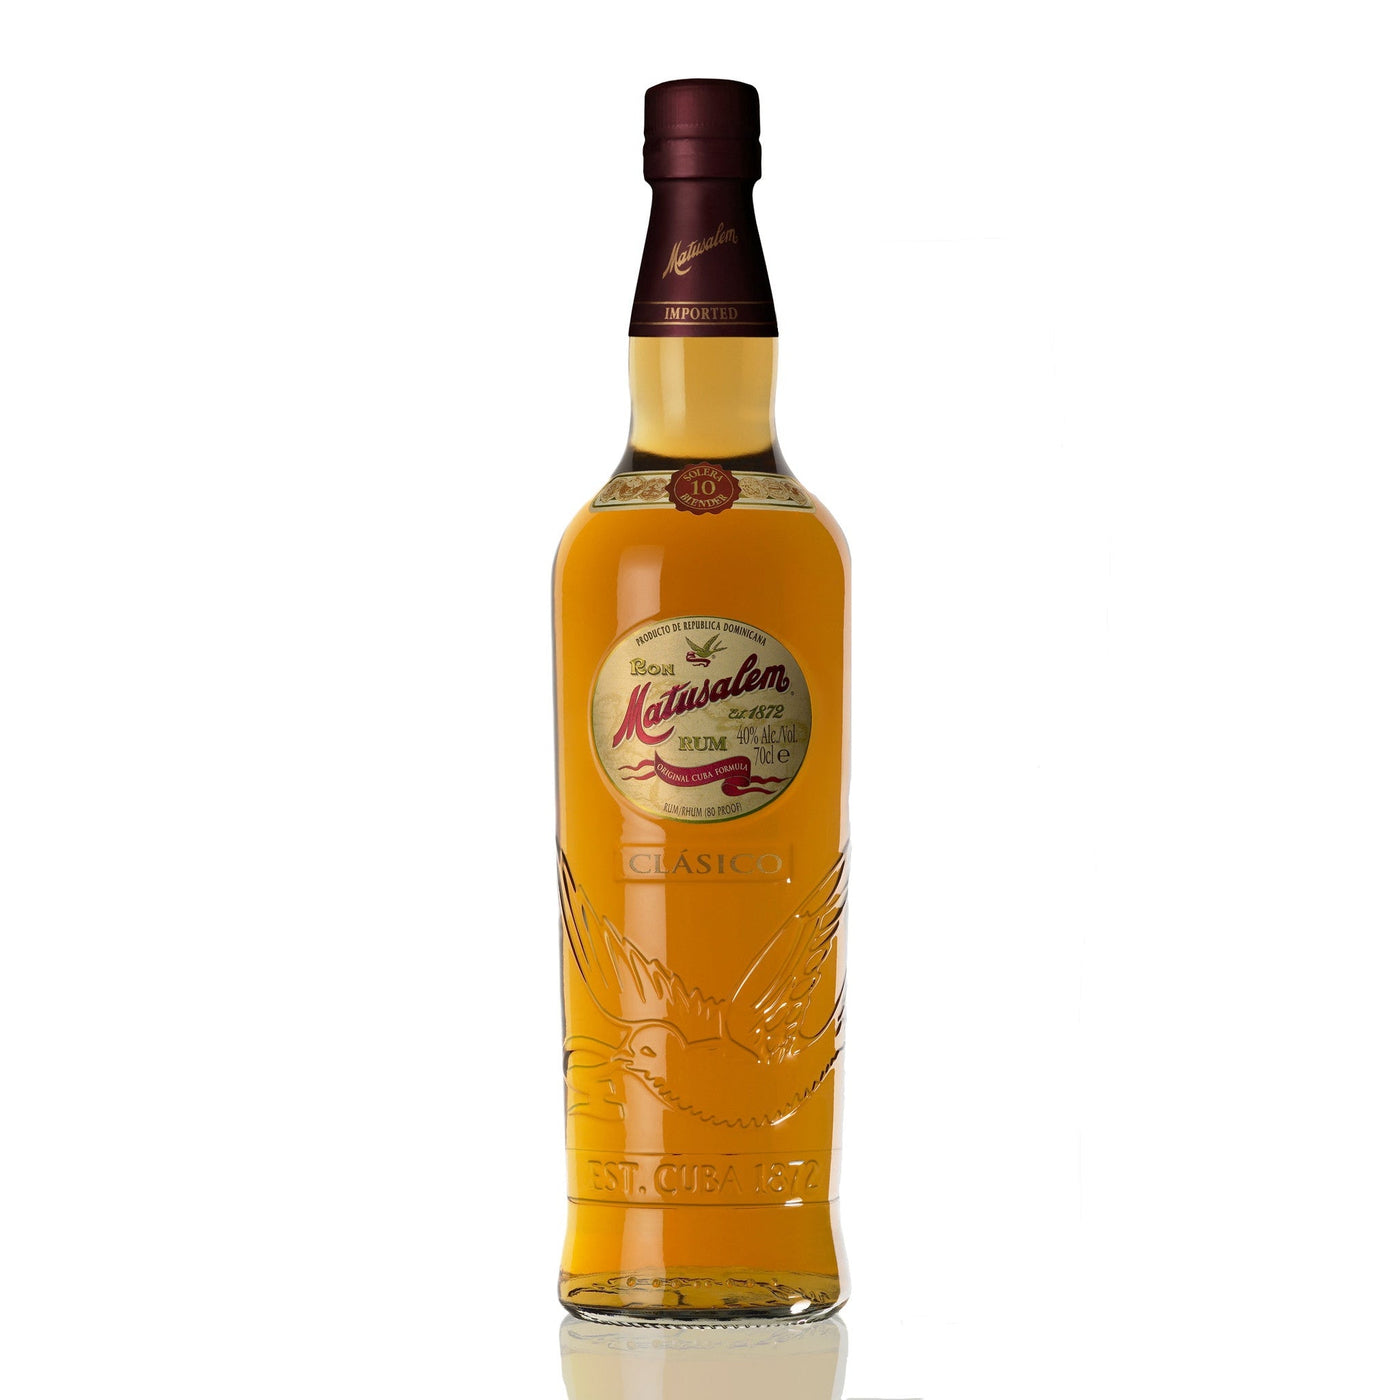 Matusalem 10 YO Rum Clasico